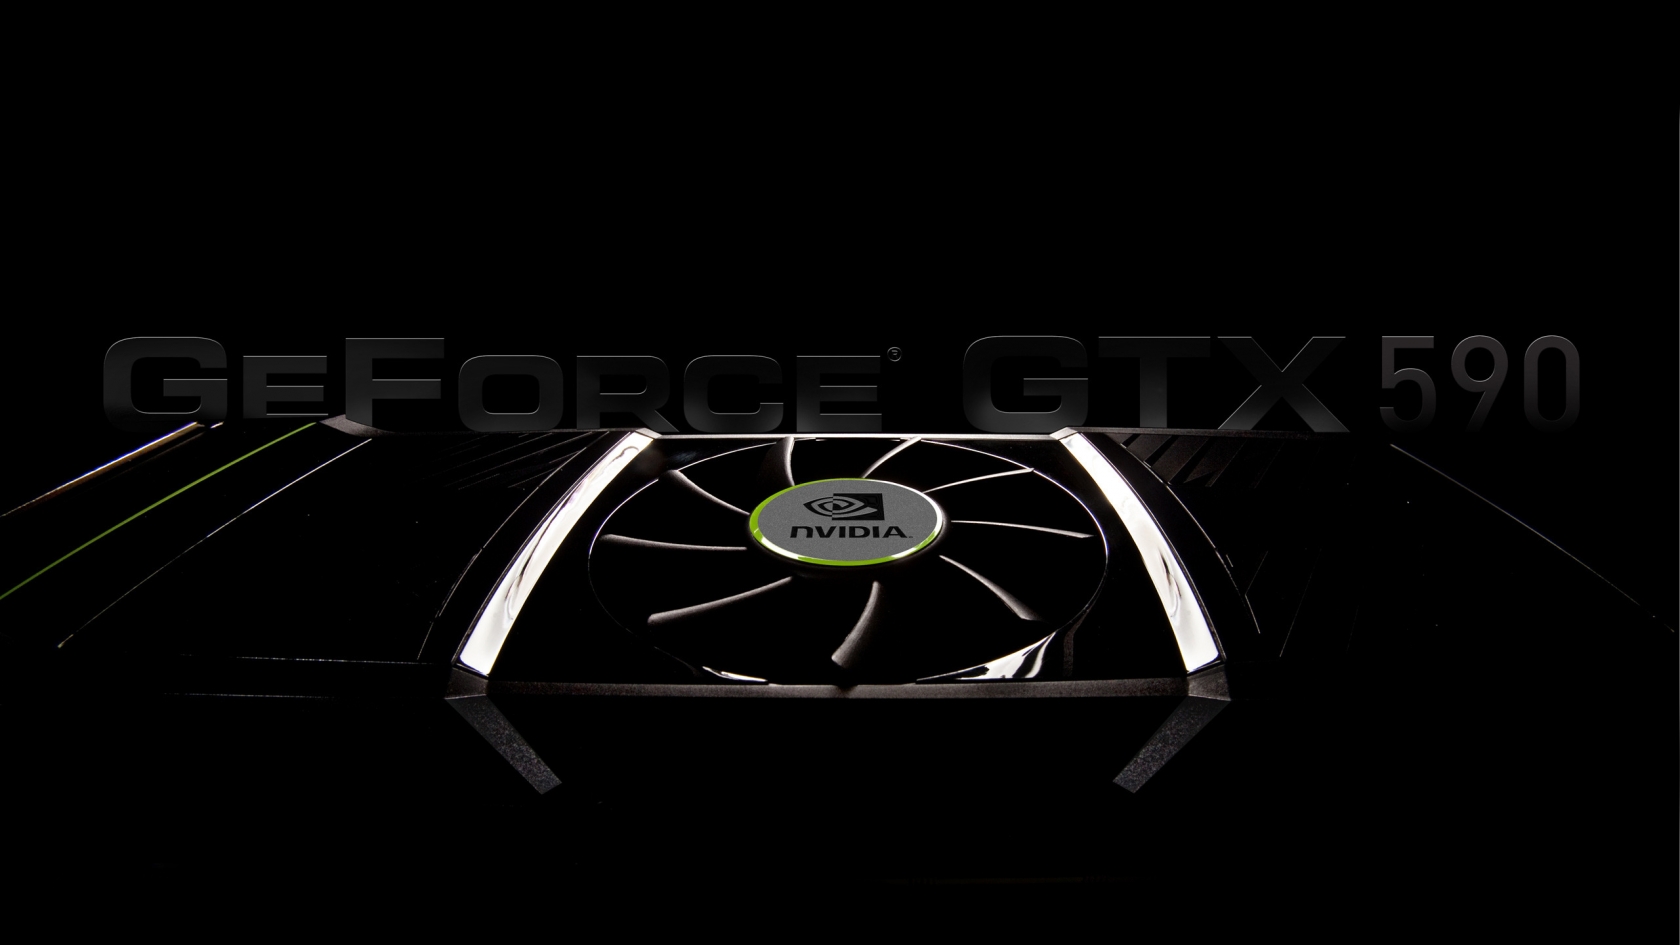 GeForce GTX 590 for 1680 x 945 HDTV resolution